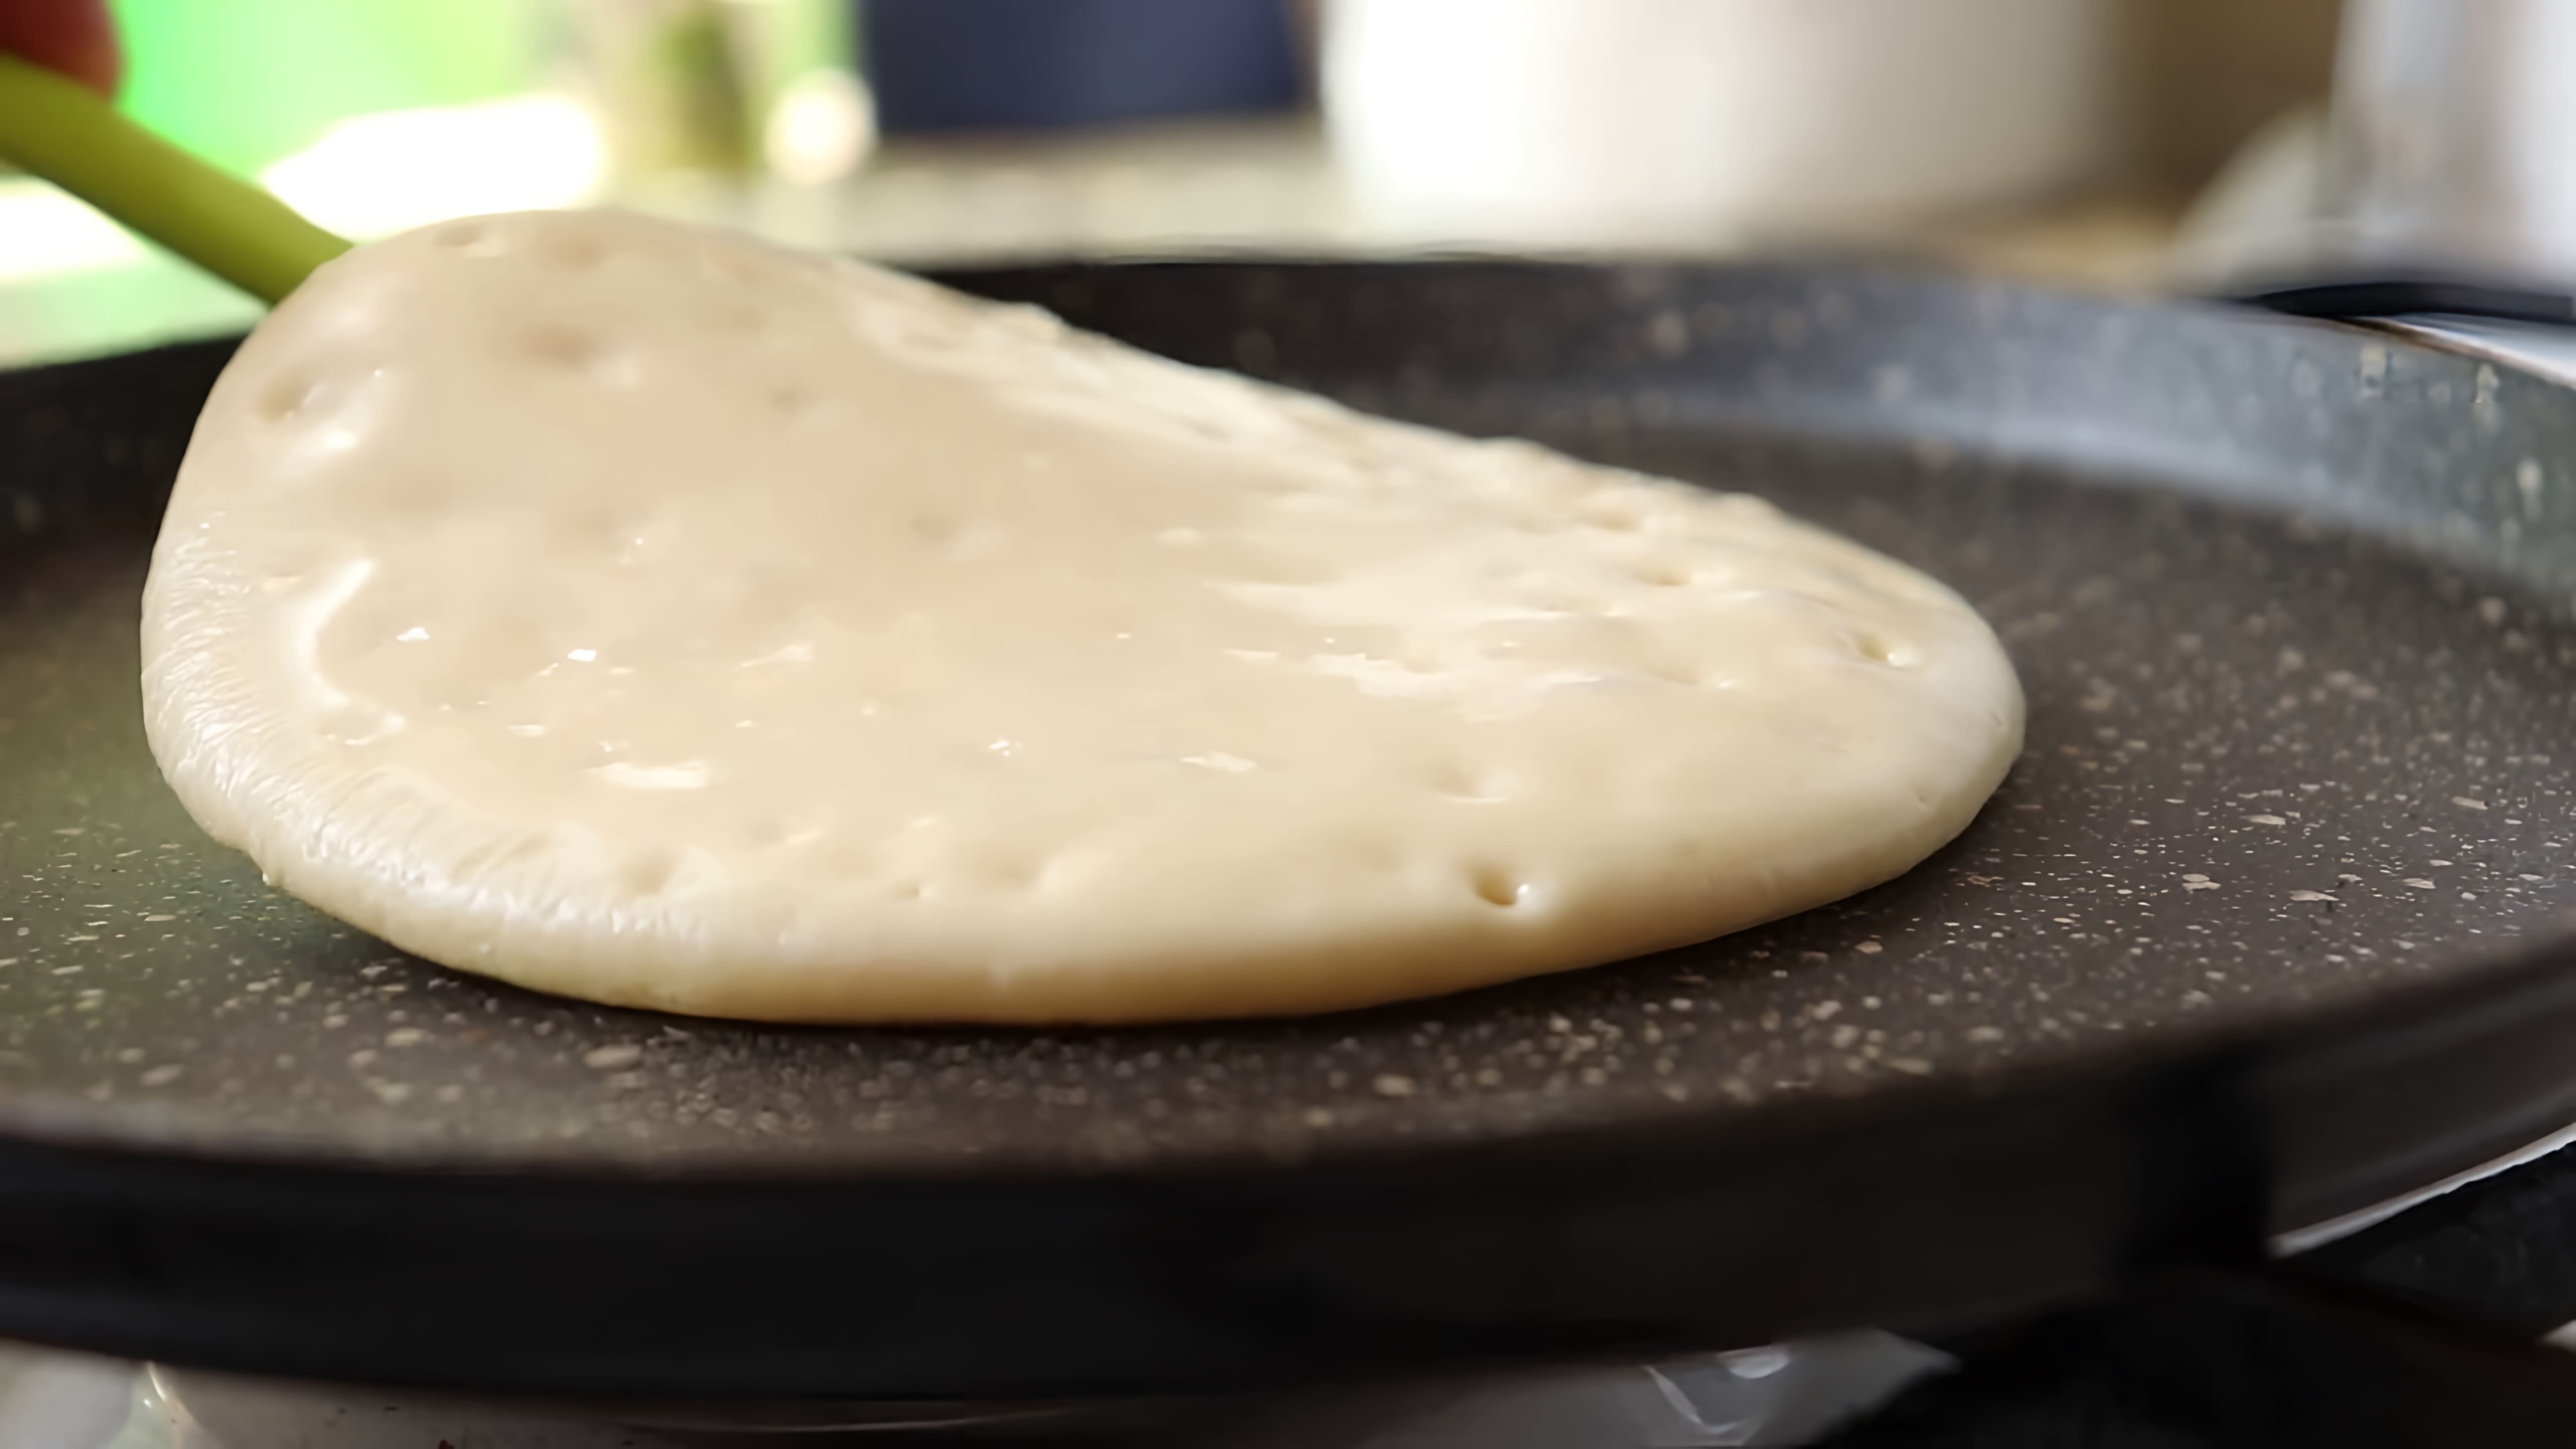 В этом видео демонстрируется рецепт приготовления панкейков на кефире